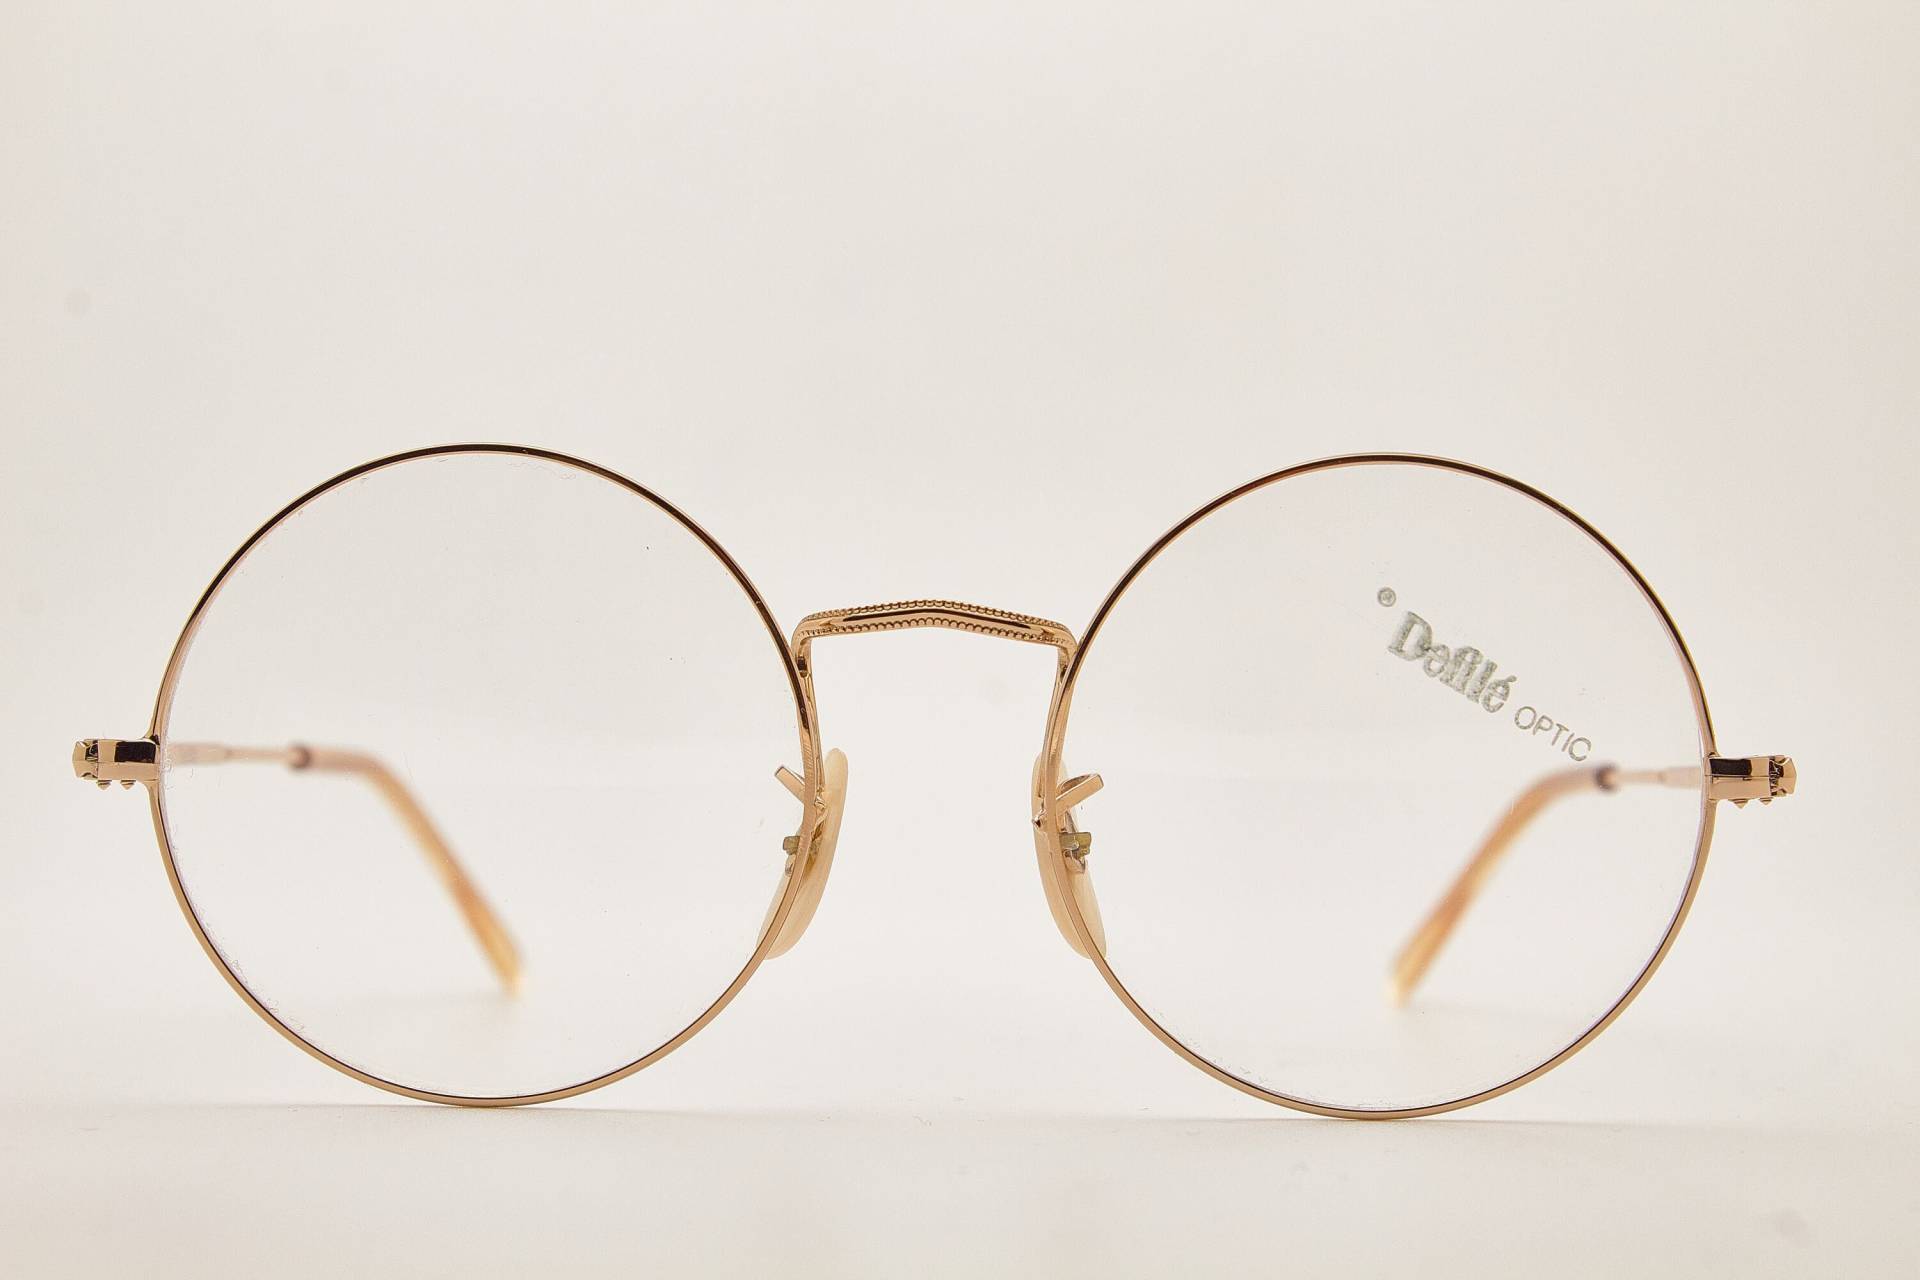 Defile Optic Piper 57 R30 Gold Metall Runde Brille/Hipster Brillen Vintage 1980Er Sonnenbrillen von VintageGlassesVault